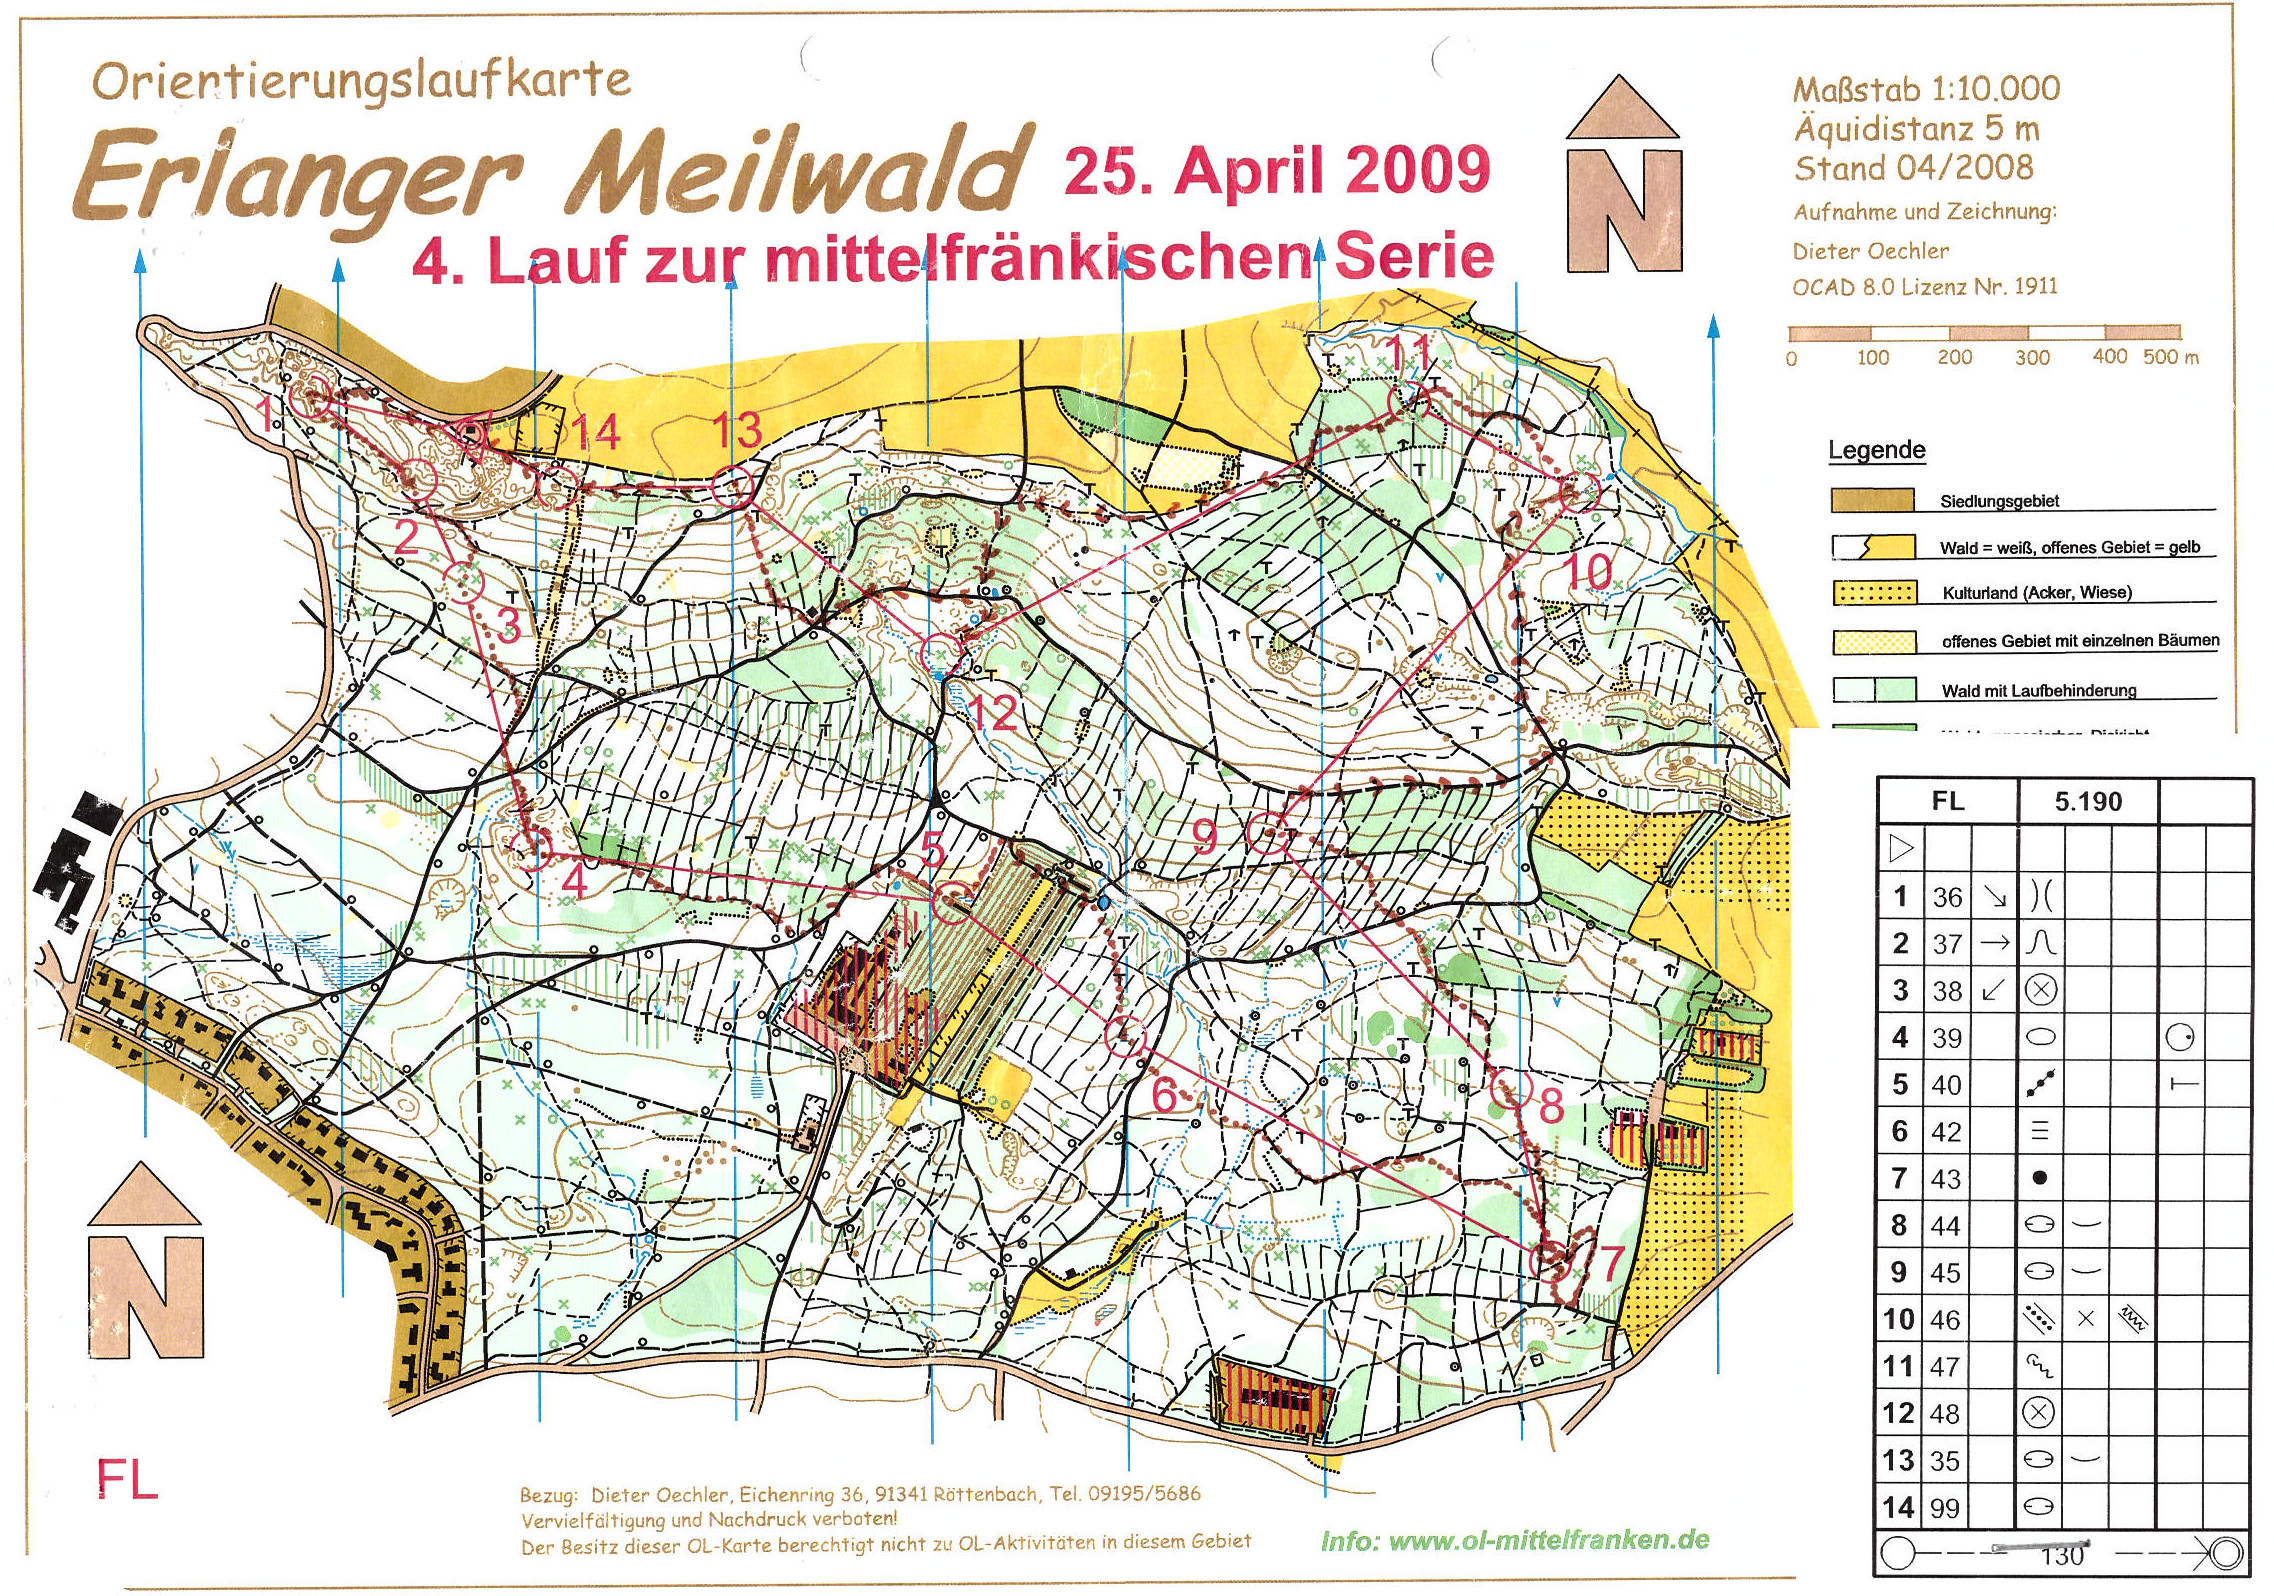 Mittelfranken-Serie 2009 Lauf 3 (25-04-2009)